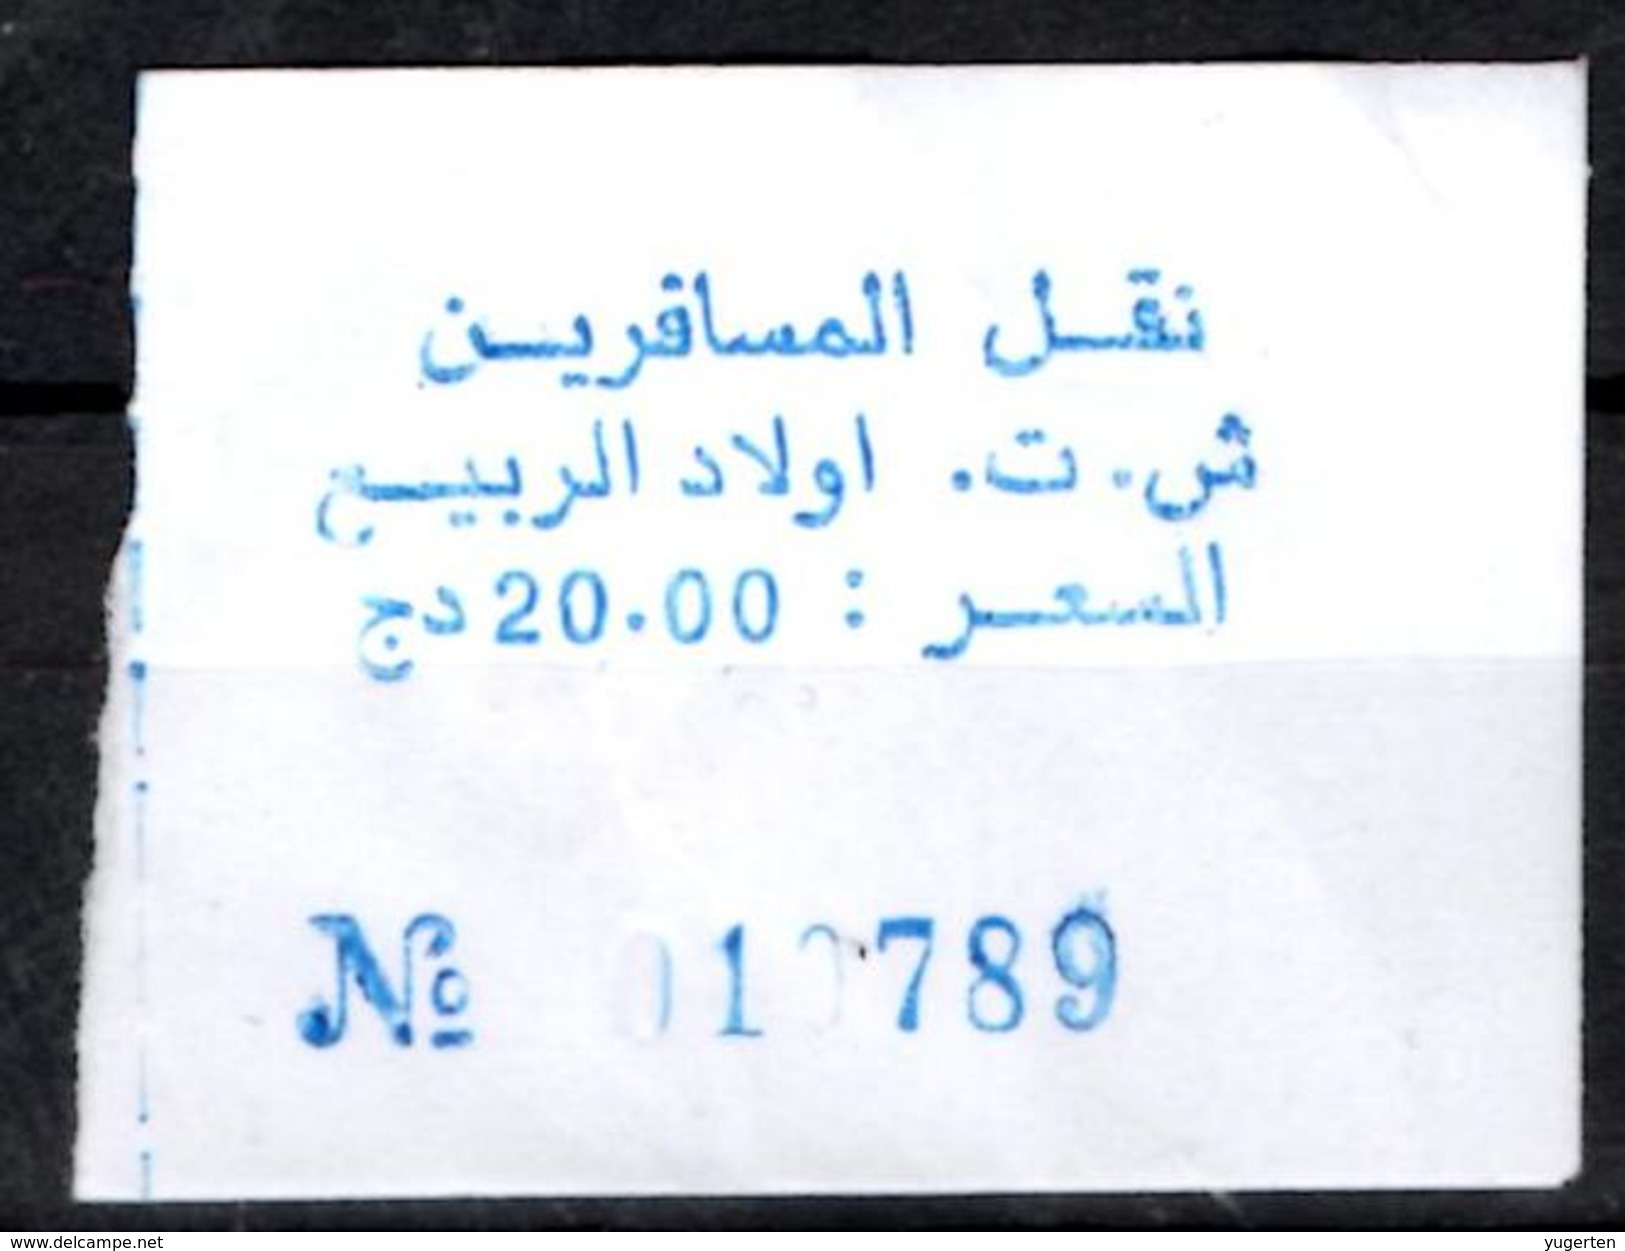 Algeria Ticket Bus Transport Urbain - Annaba Trajet Ouled Errabii Billete De Autobús Biglietto Dell'autobus - Mundo